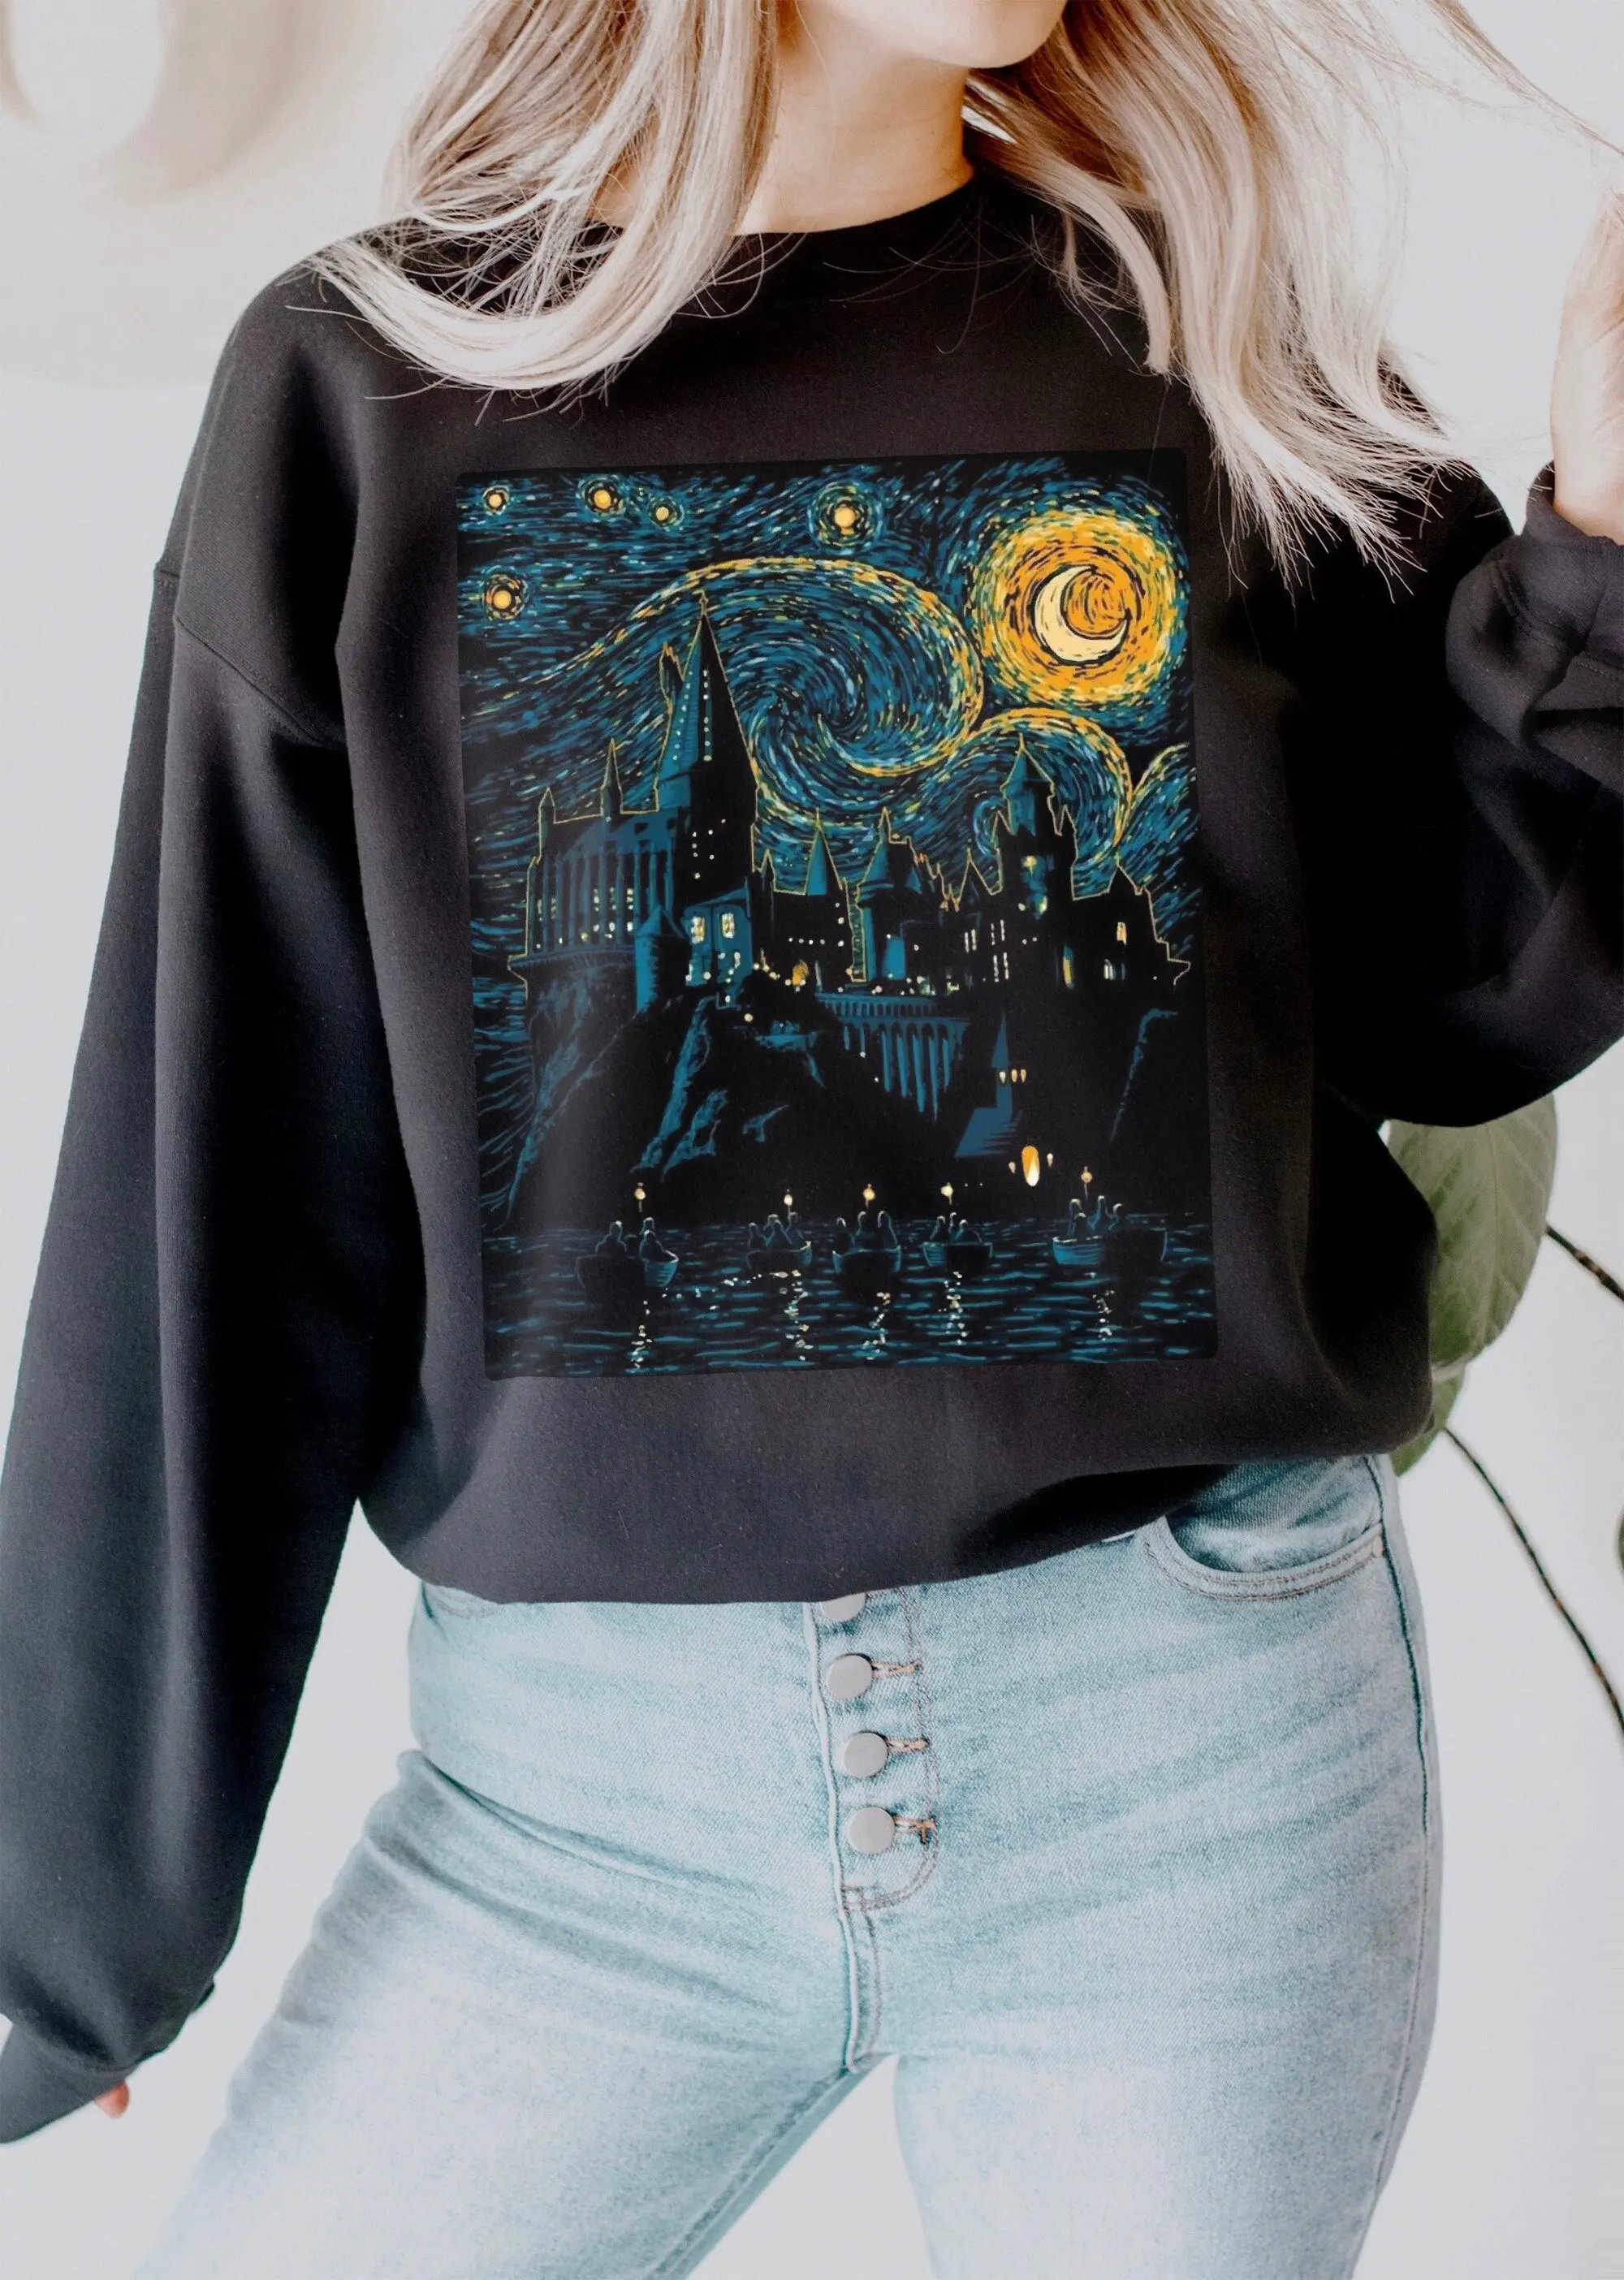 

Свитшот женский винтажный с изображением замка черного цвета и лунного света